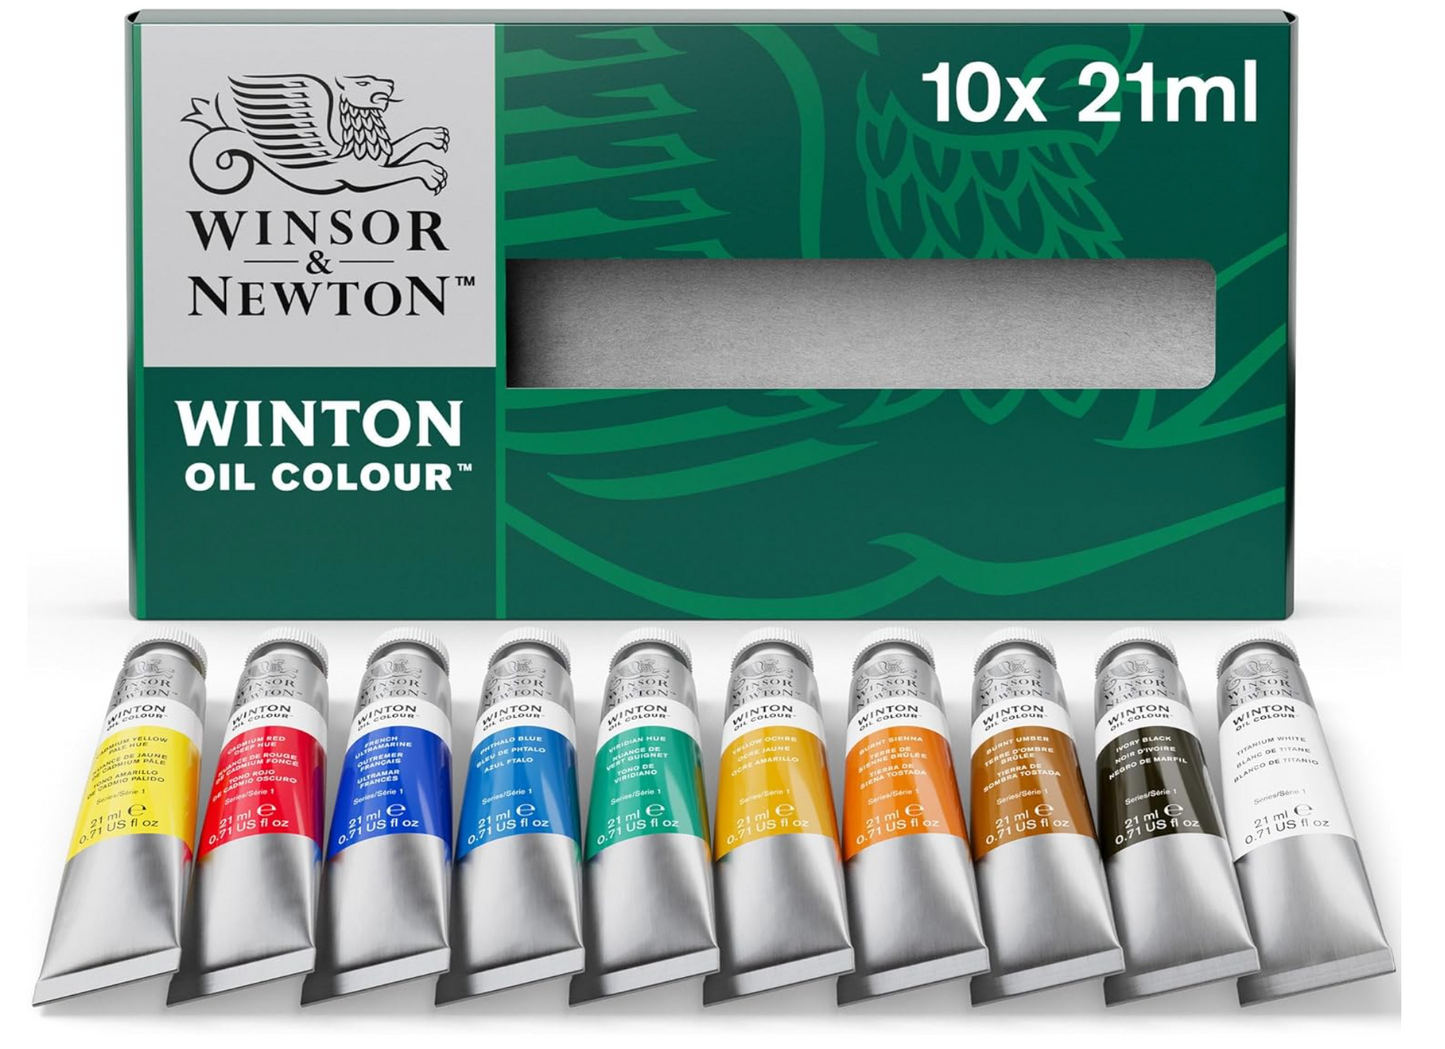 Winsor & Newton Winton Oil Color Paint, Basic Set, 10 x 21ml Tubes